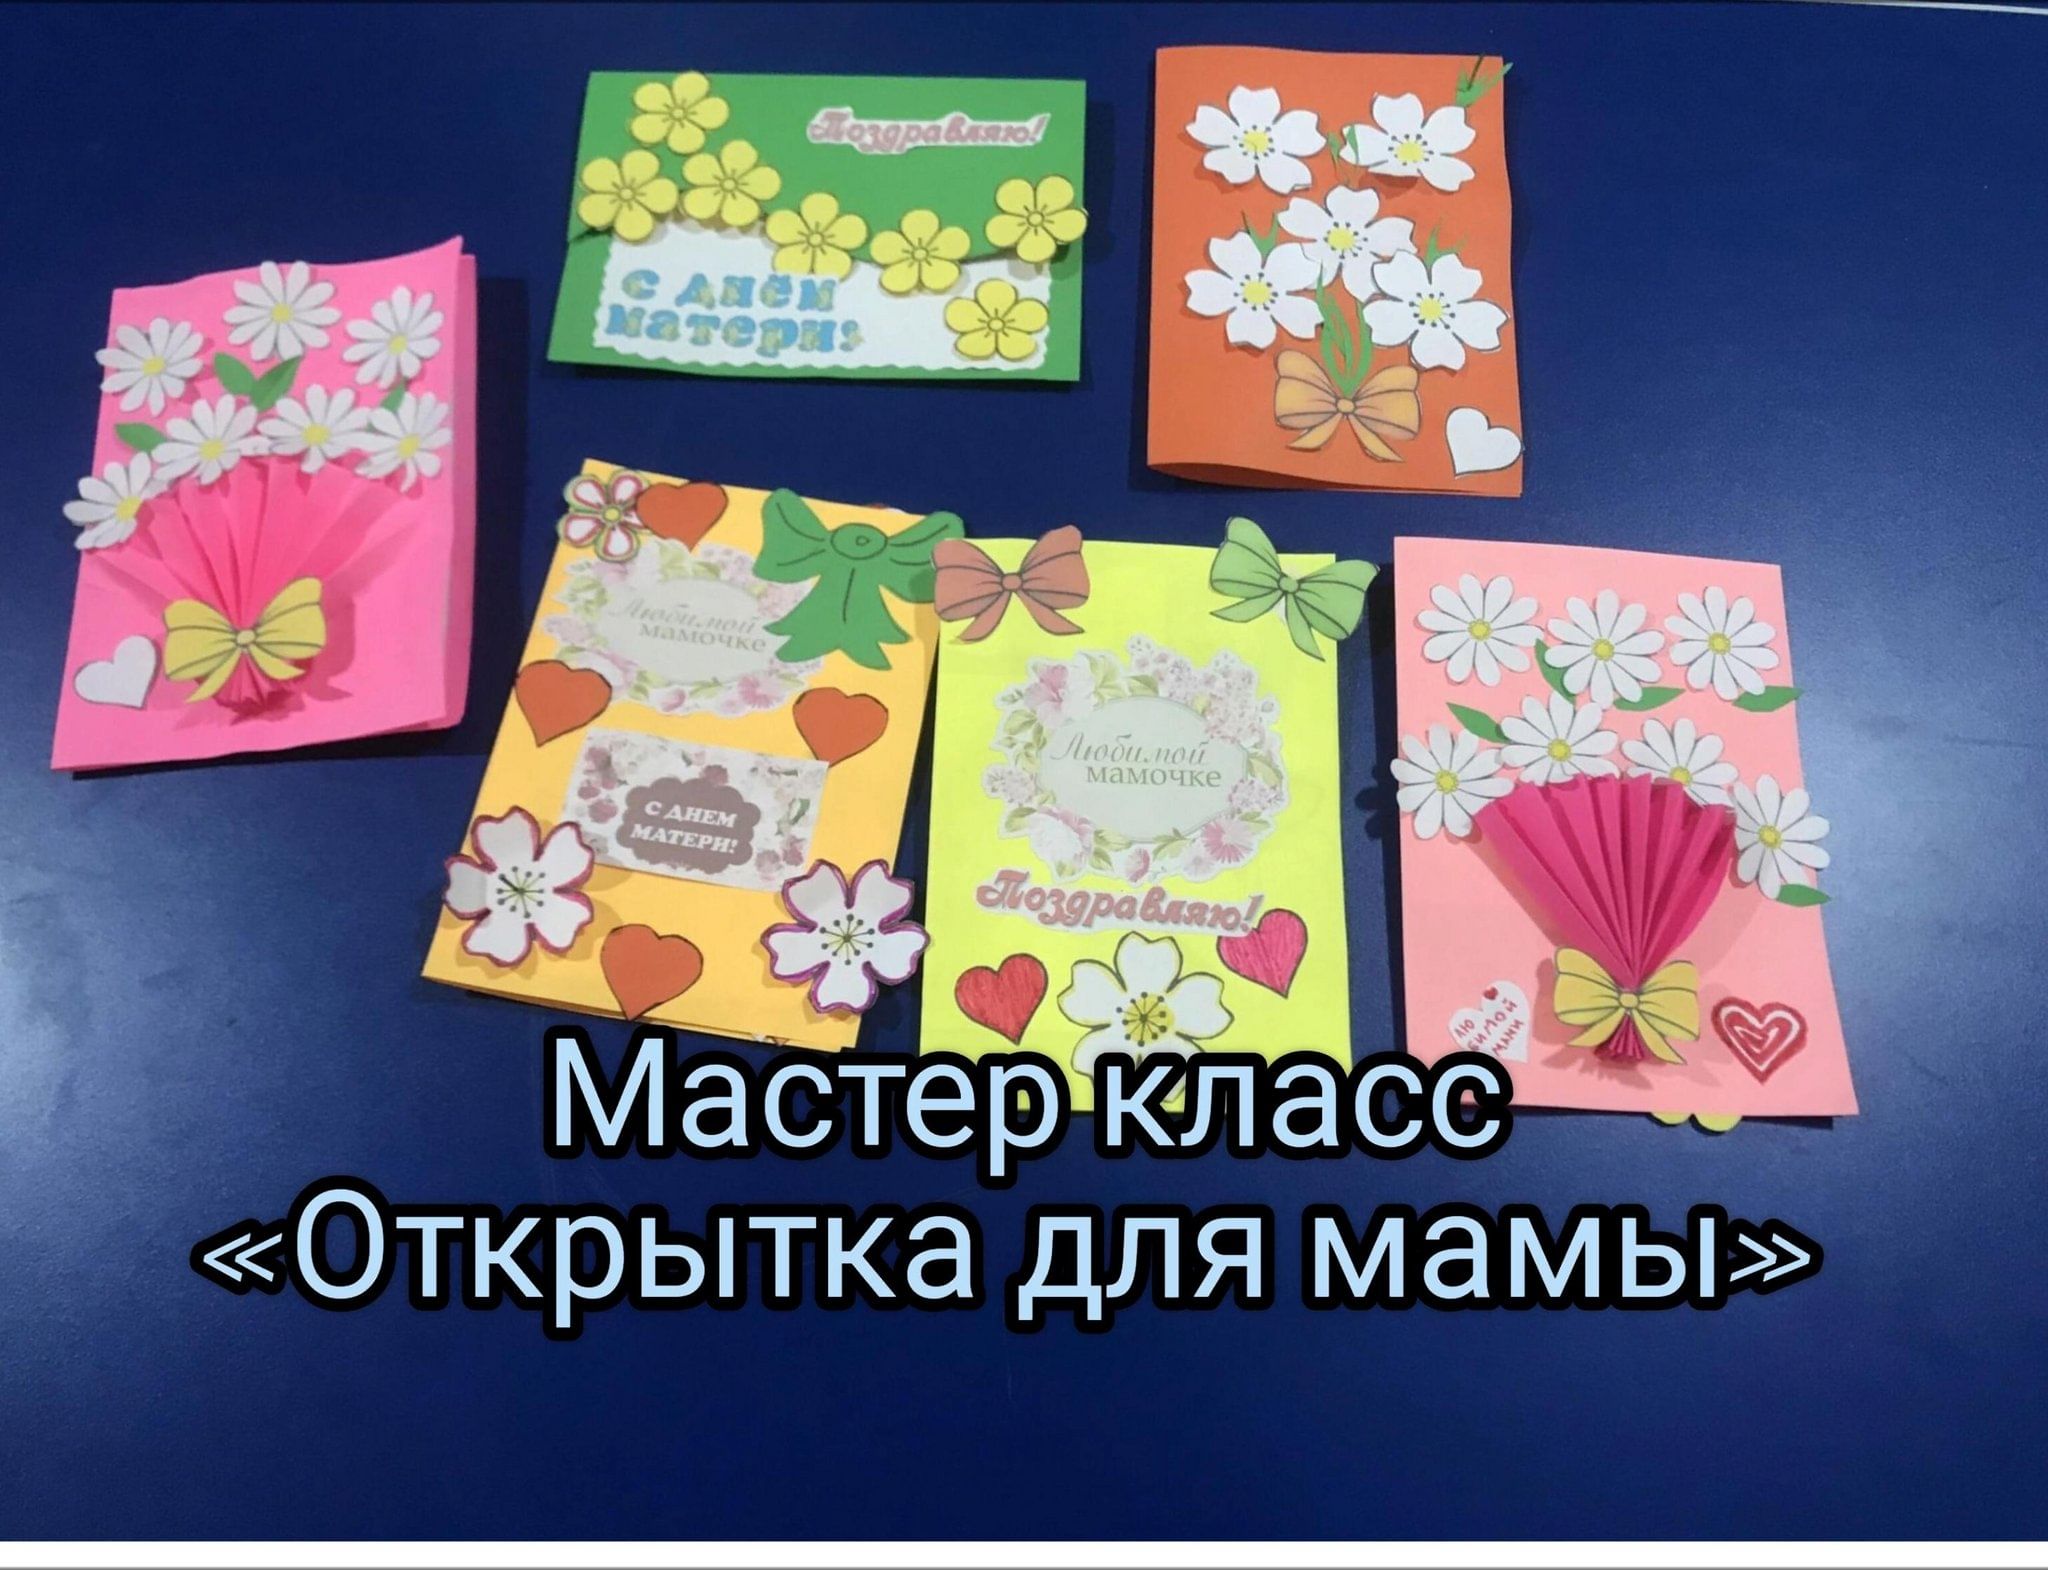 Районный мастер-класс «Изготовление открытки ко Дню матери»